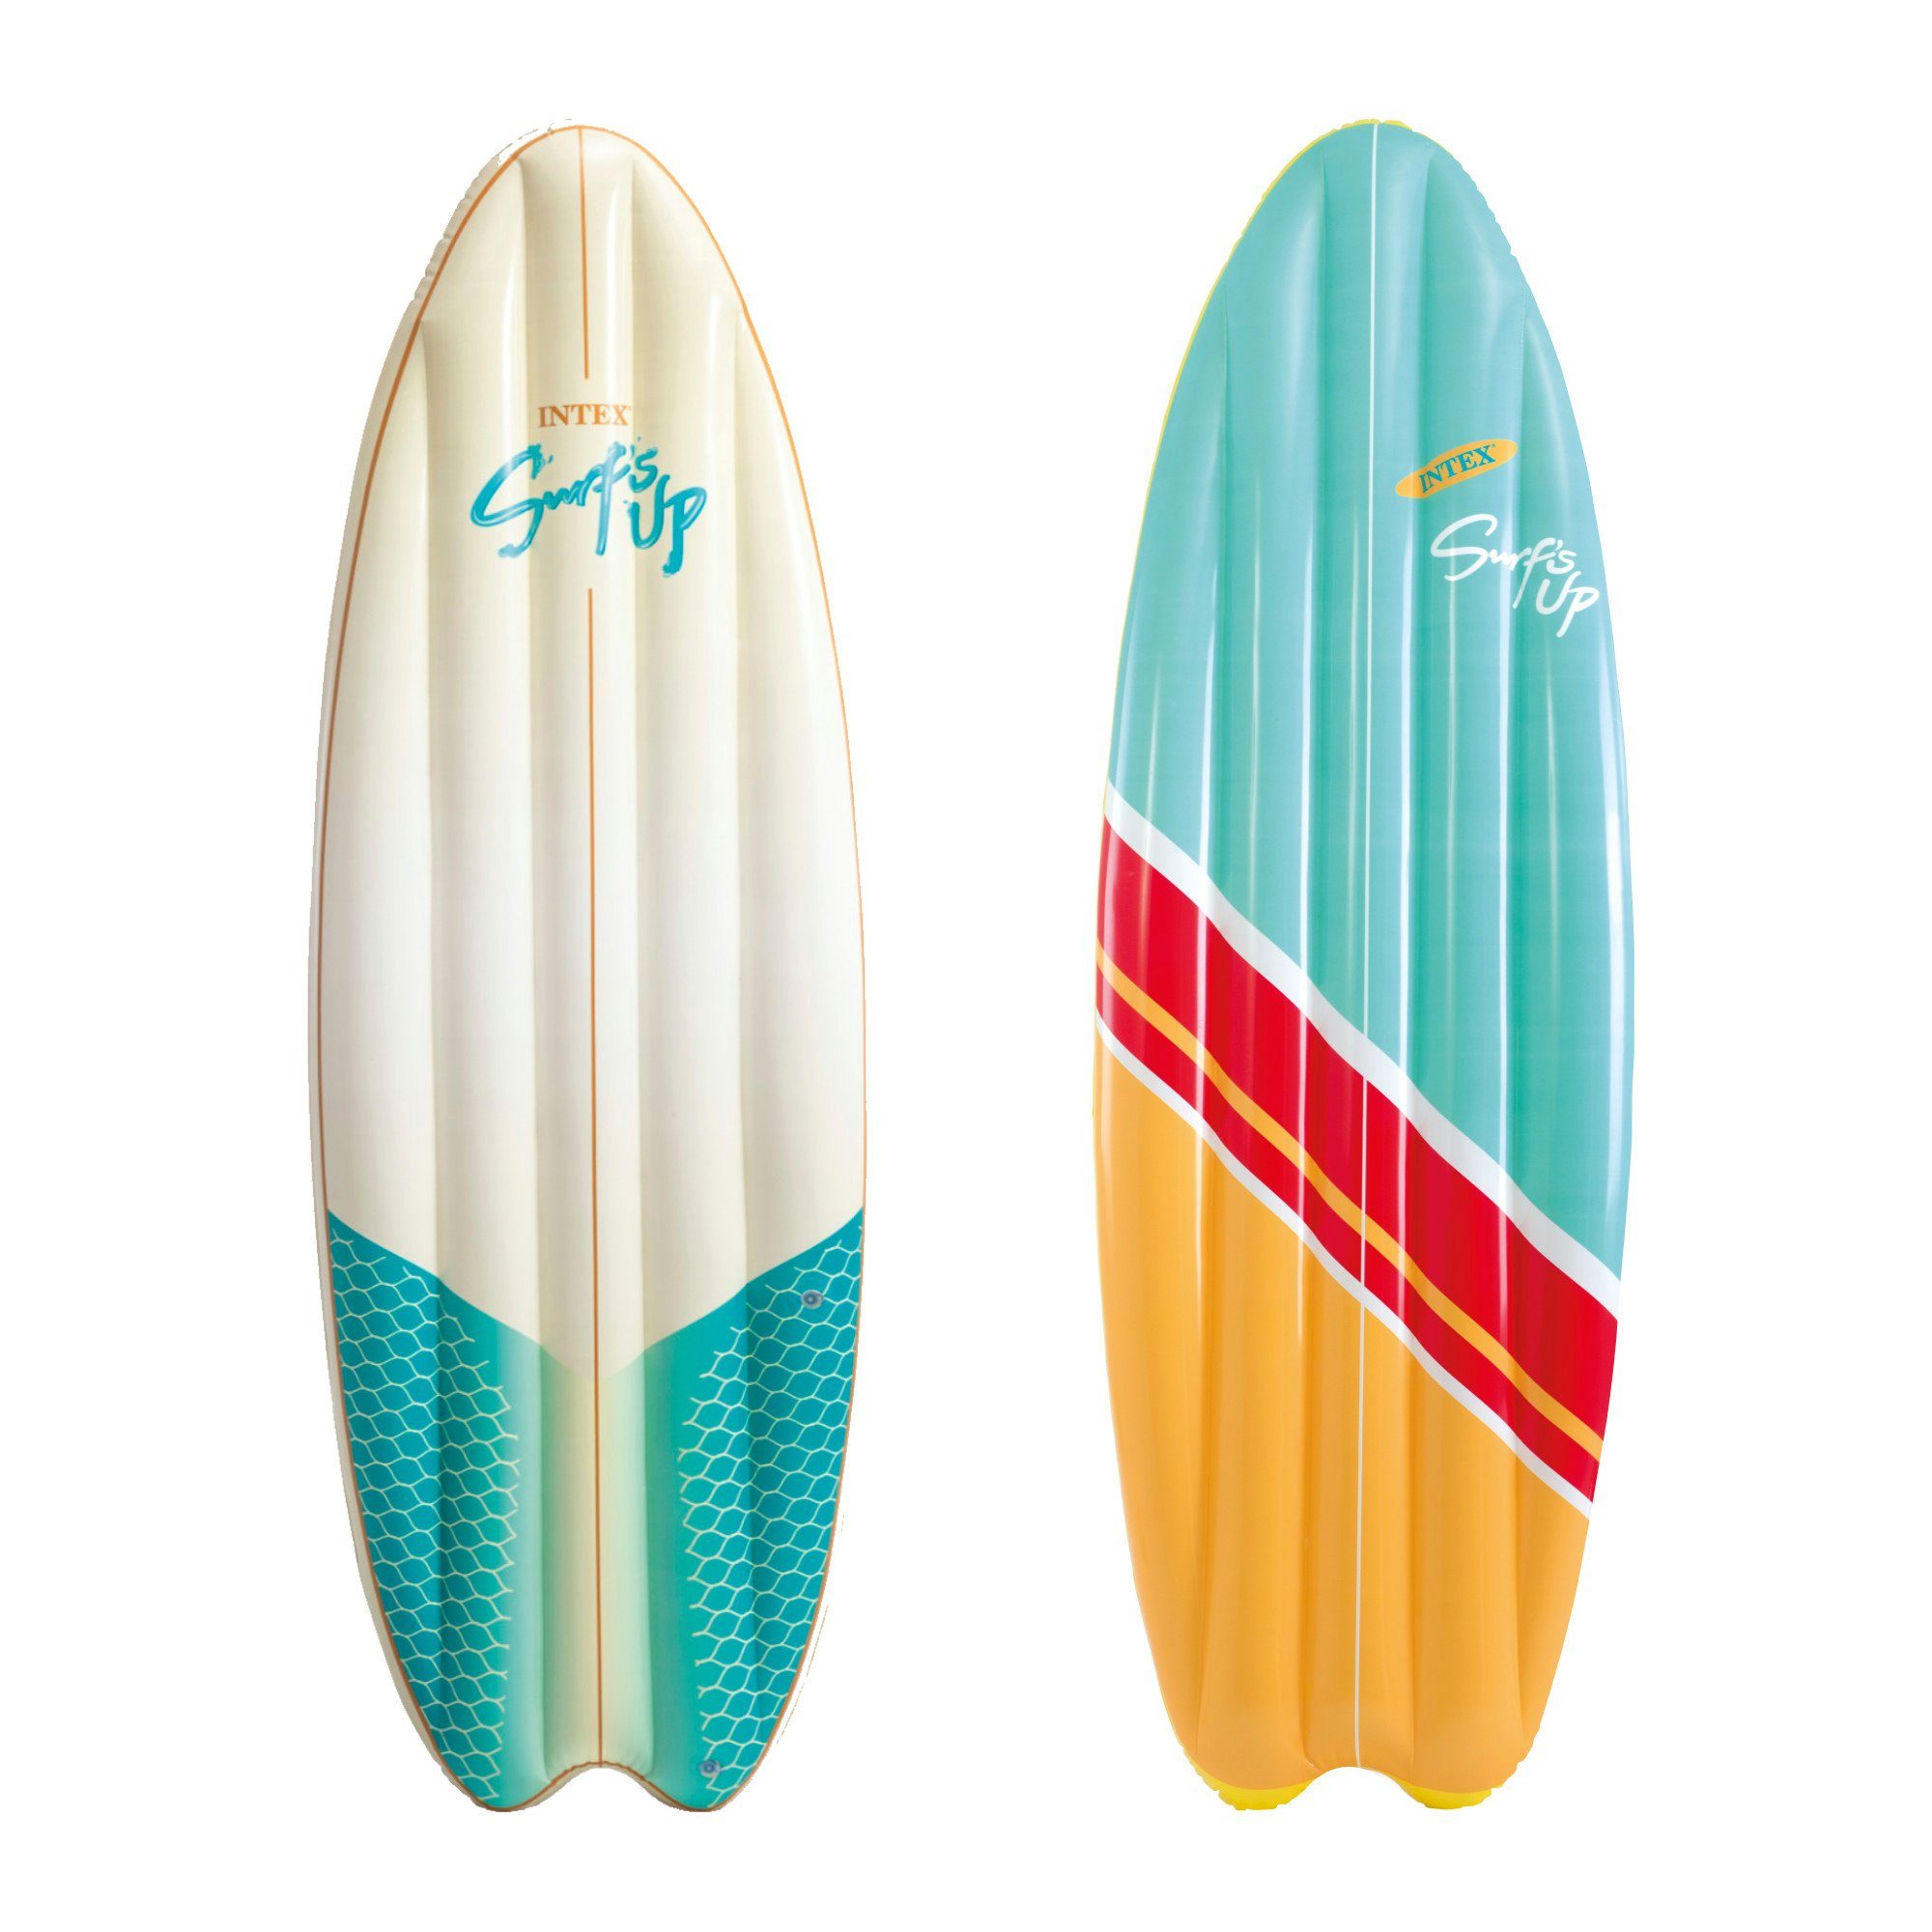 Intex Luftmatratze INTEX Surfer Surf´s Up Mats, 178x69cm, Auch als Sonnenliege nutzbar